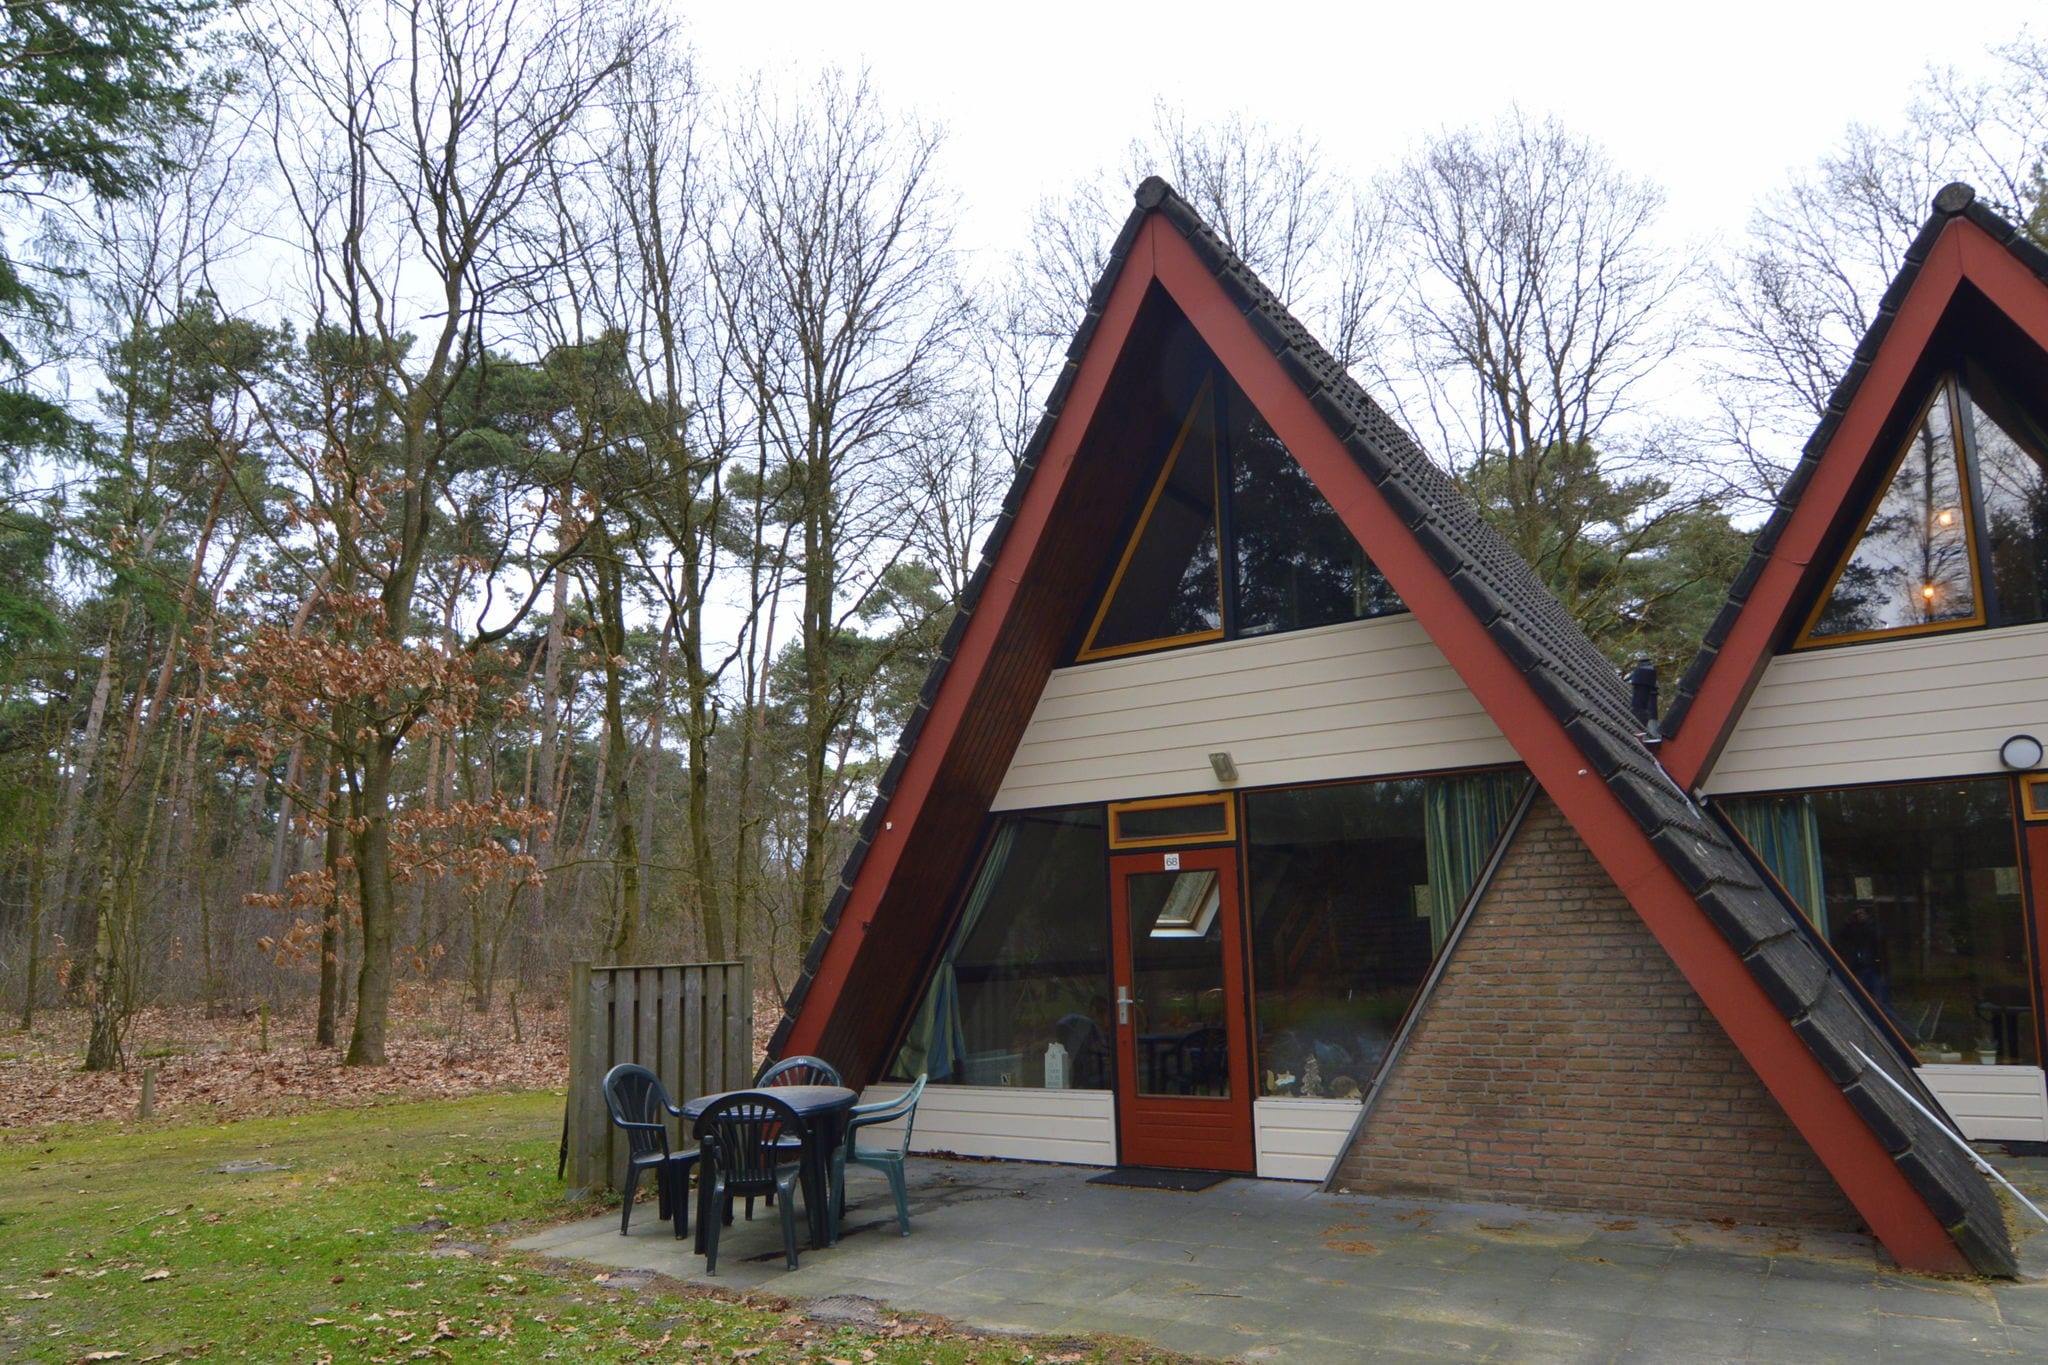 Maison de vacances moderne, Limbourg, au cœur d'une forêt